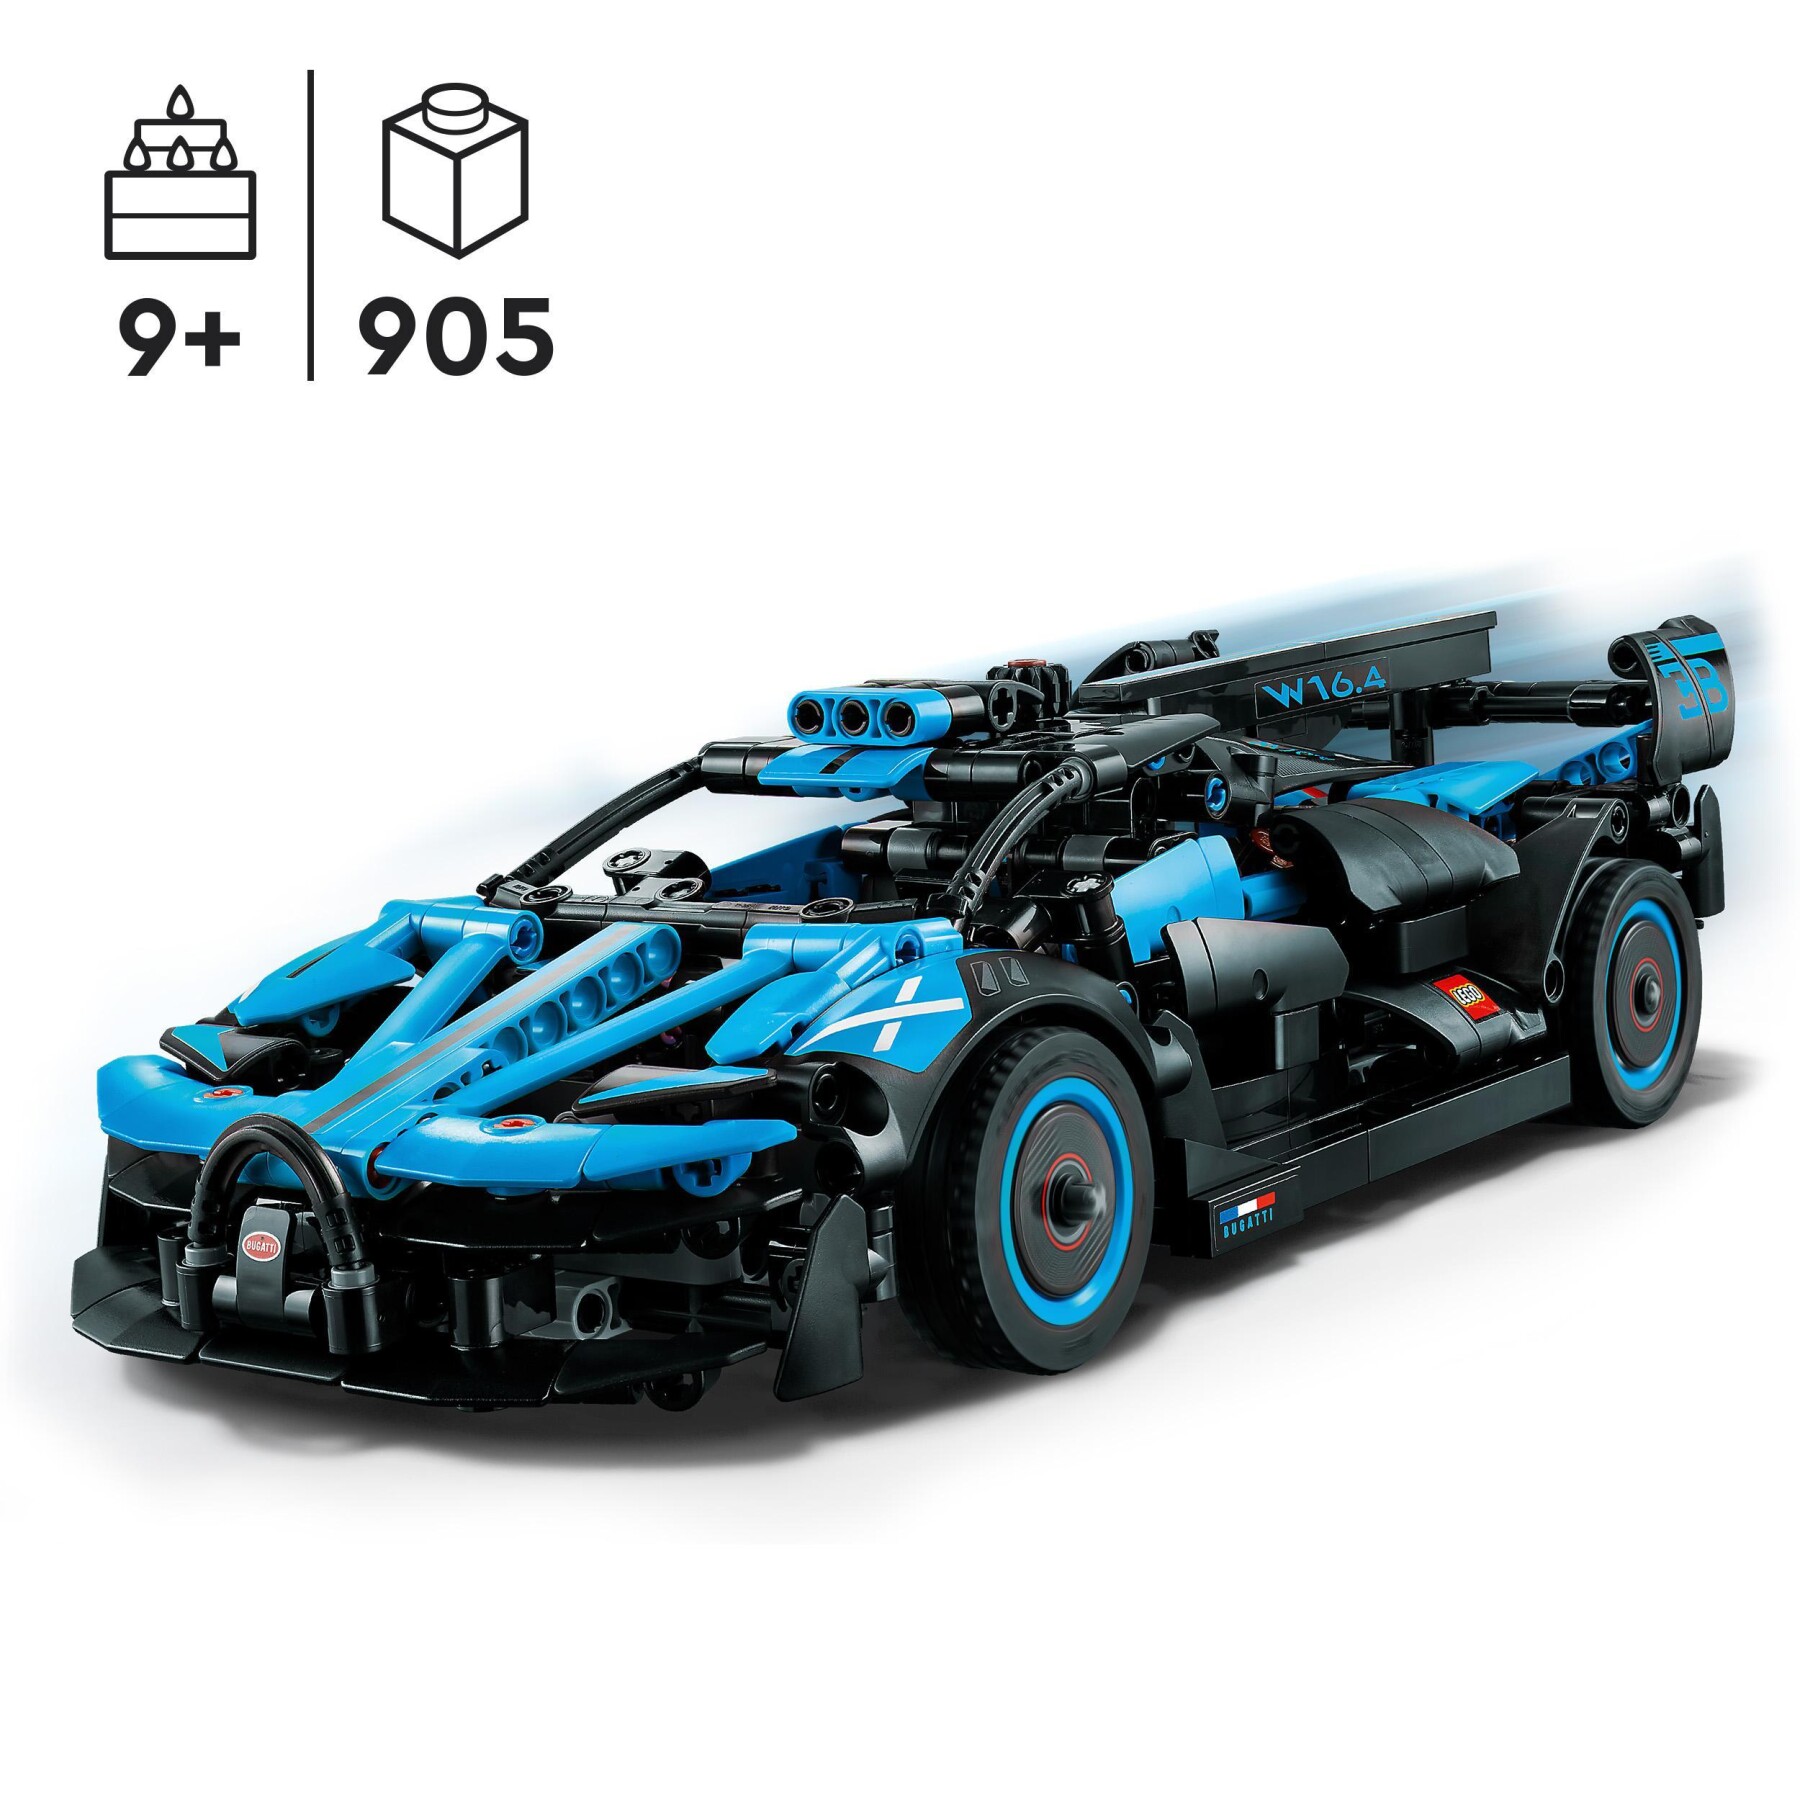 Lego technic 42162 bugatti bolide agile blue, modellino auto supercar da costruire, set macchina da corsa iconica, idee regalo - LEGO TECHNIC